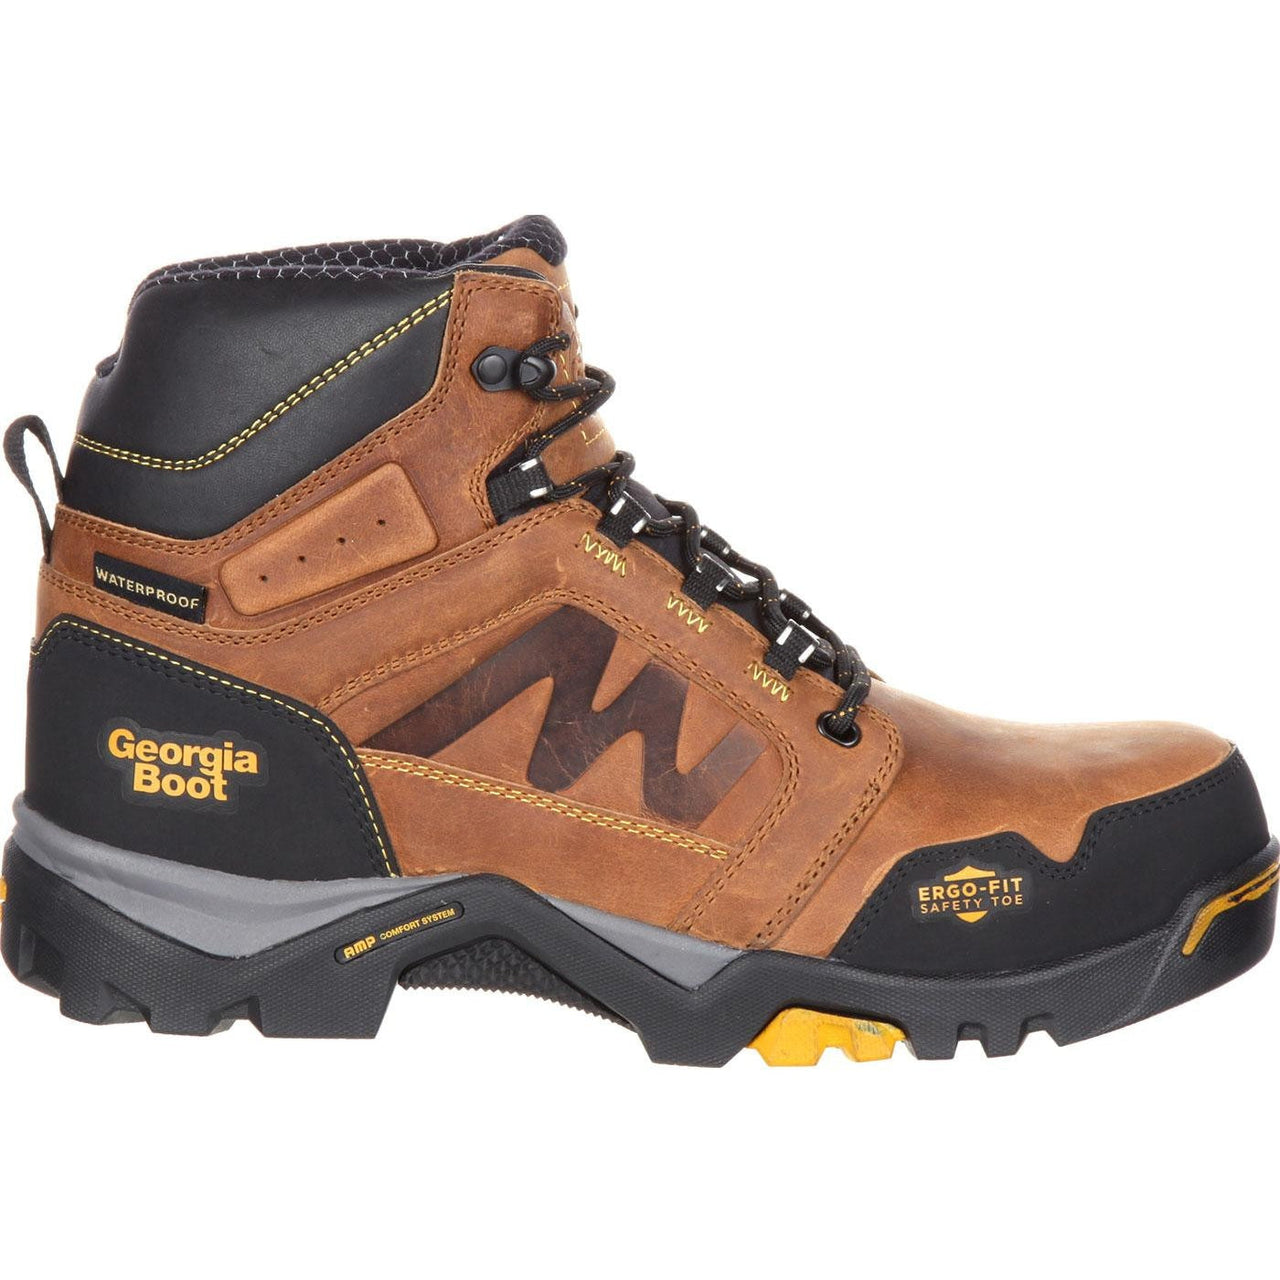 Men's Georgia Boots Amplitude Composite Toe Waterproof Work Boots Brown - yeehawcowboy